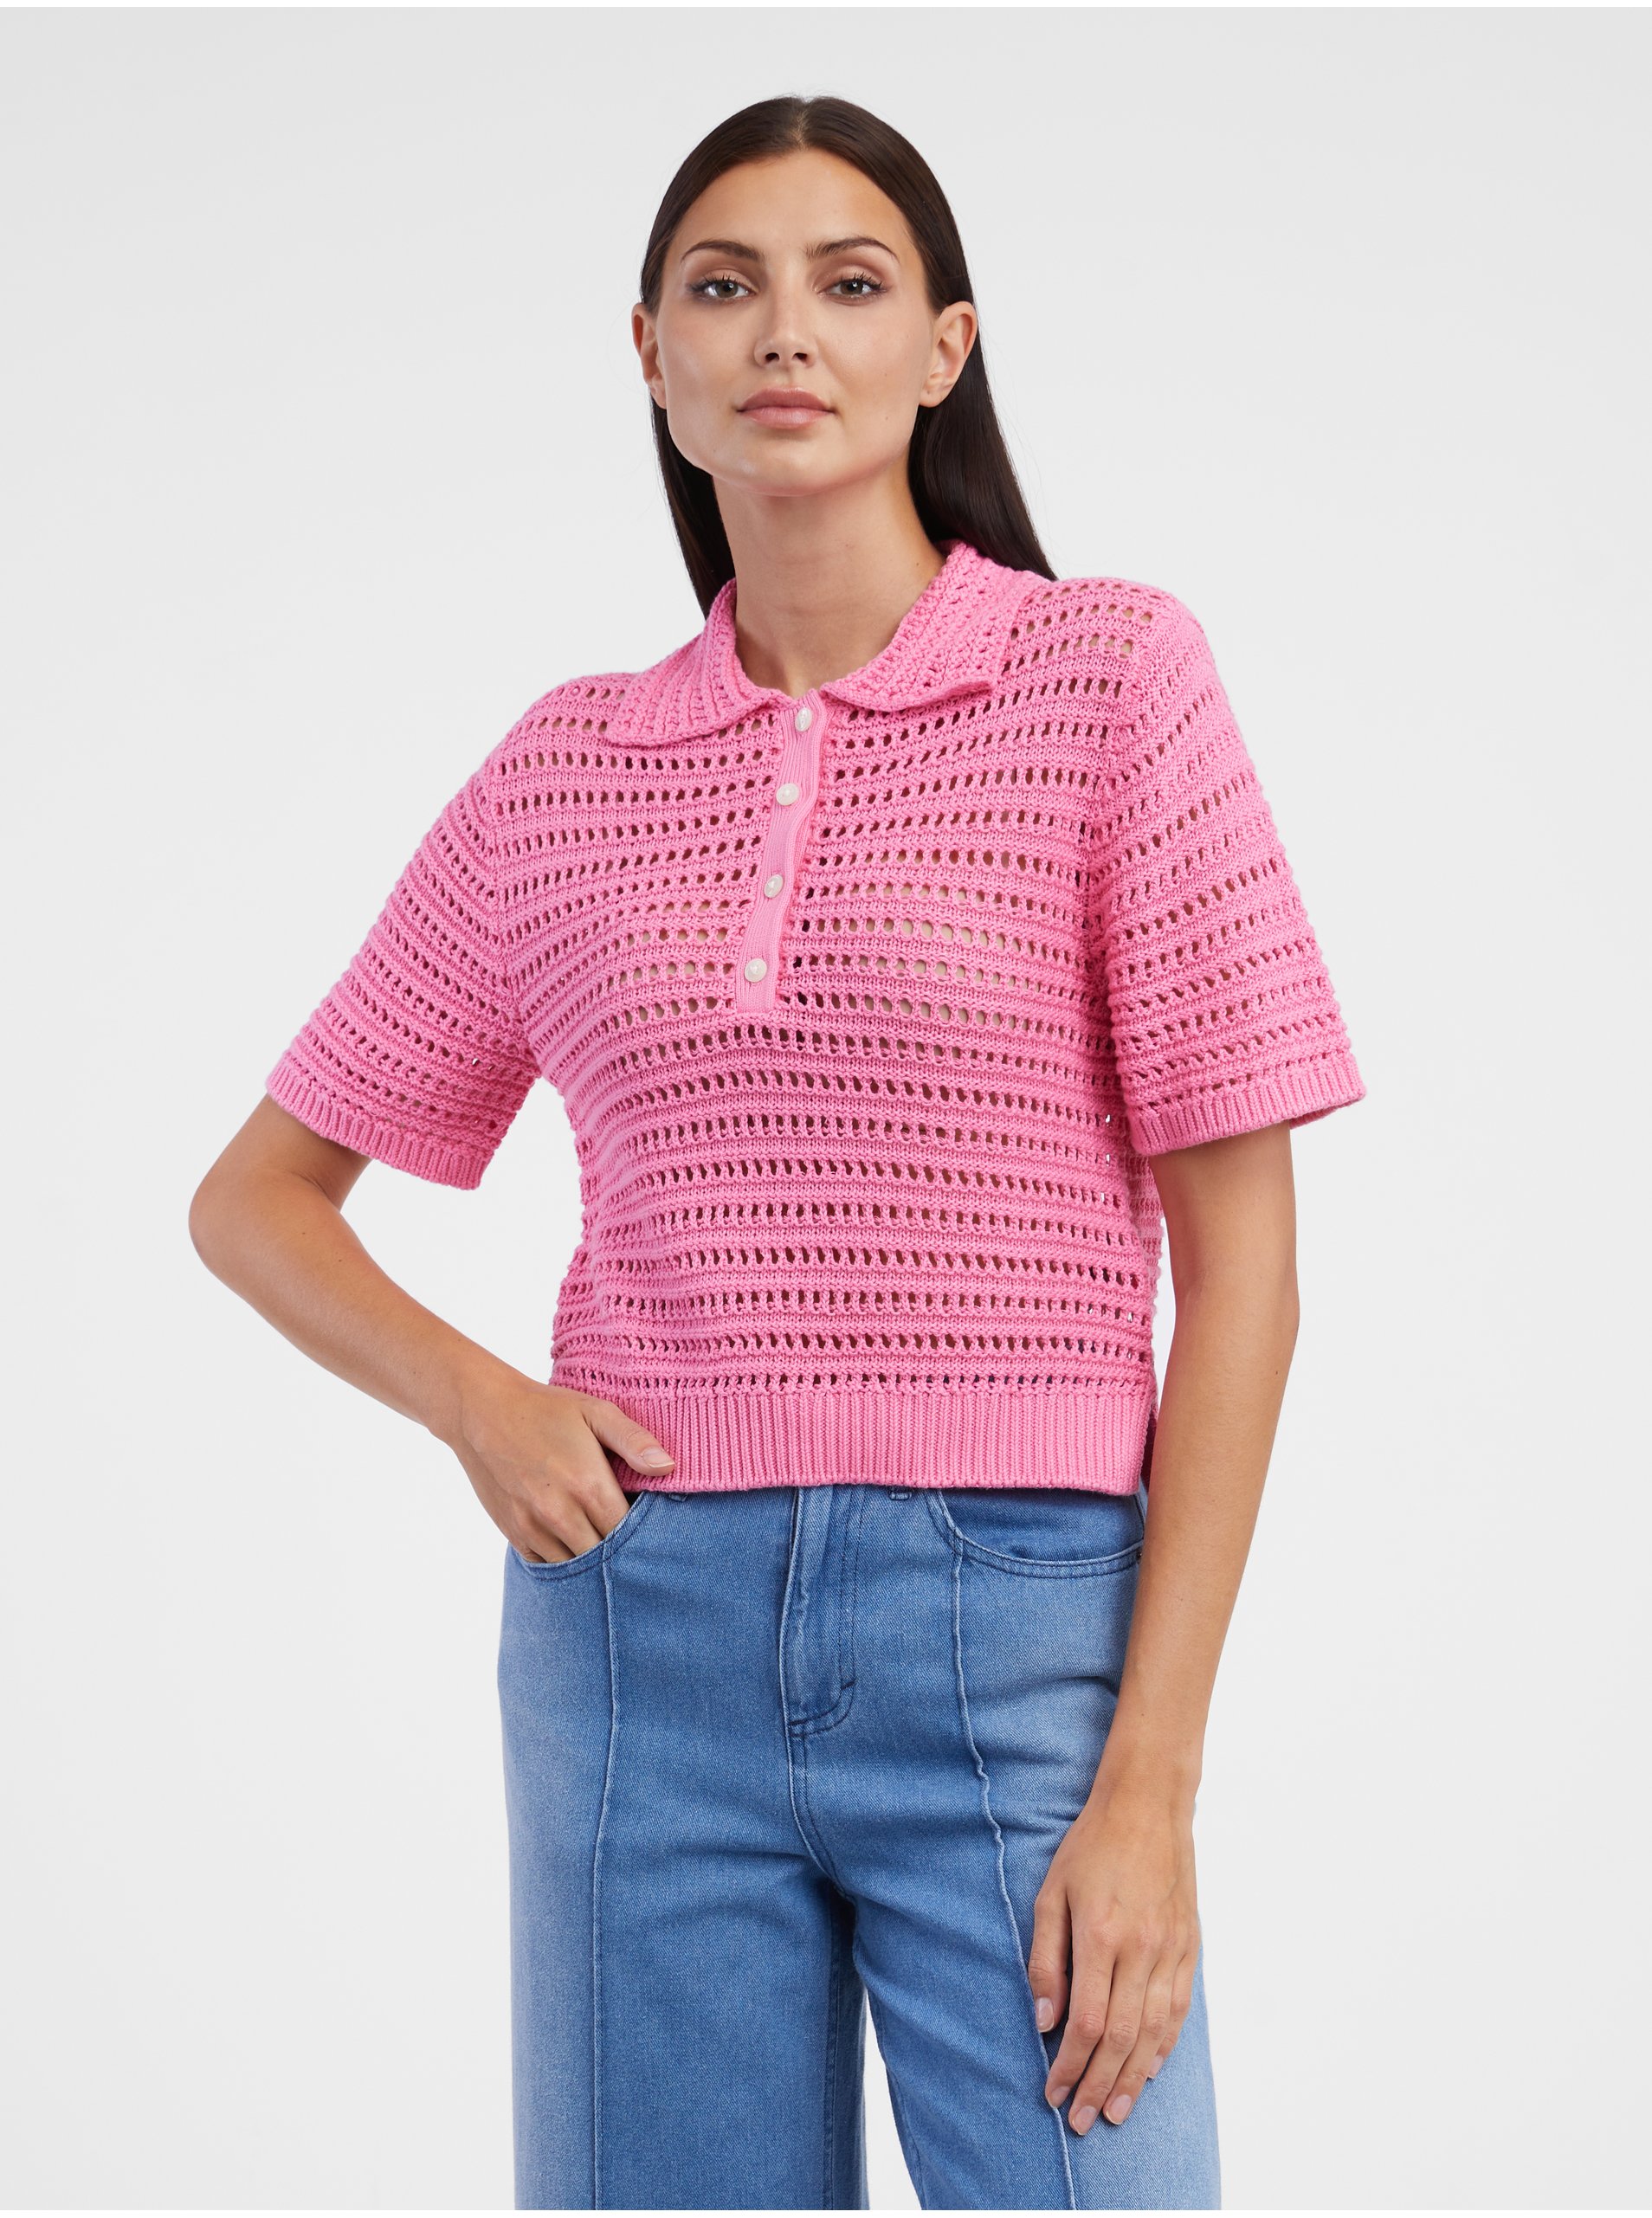 E-shop Ružový dámsky sveter s krátkym rukávom Tom Tailor Denim